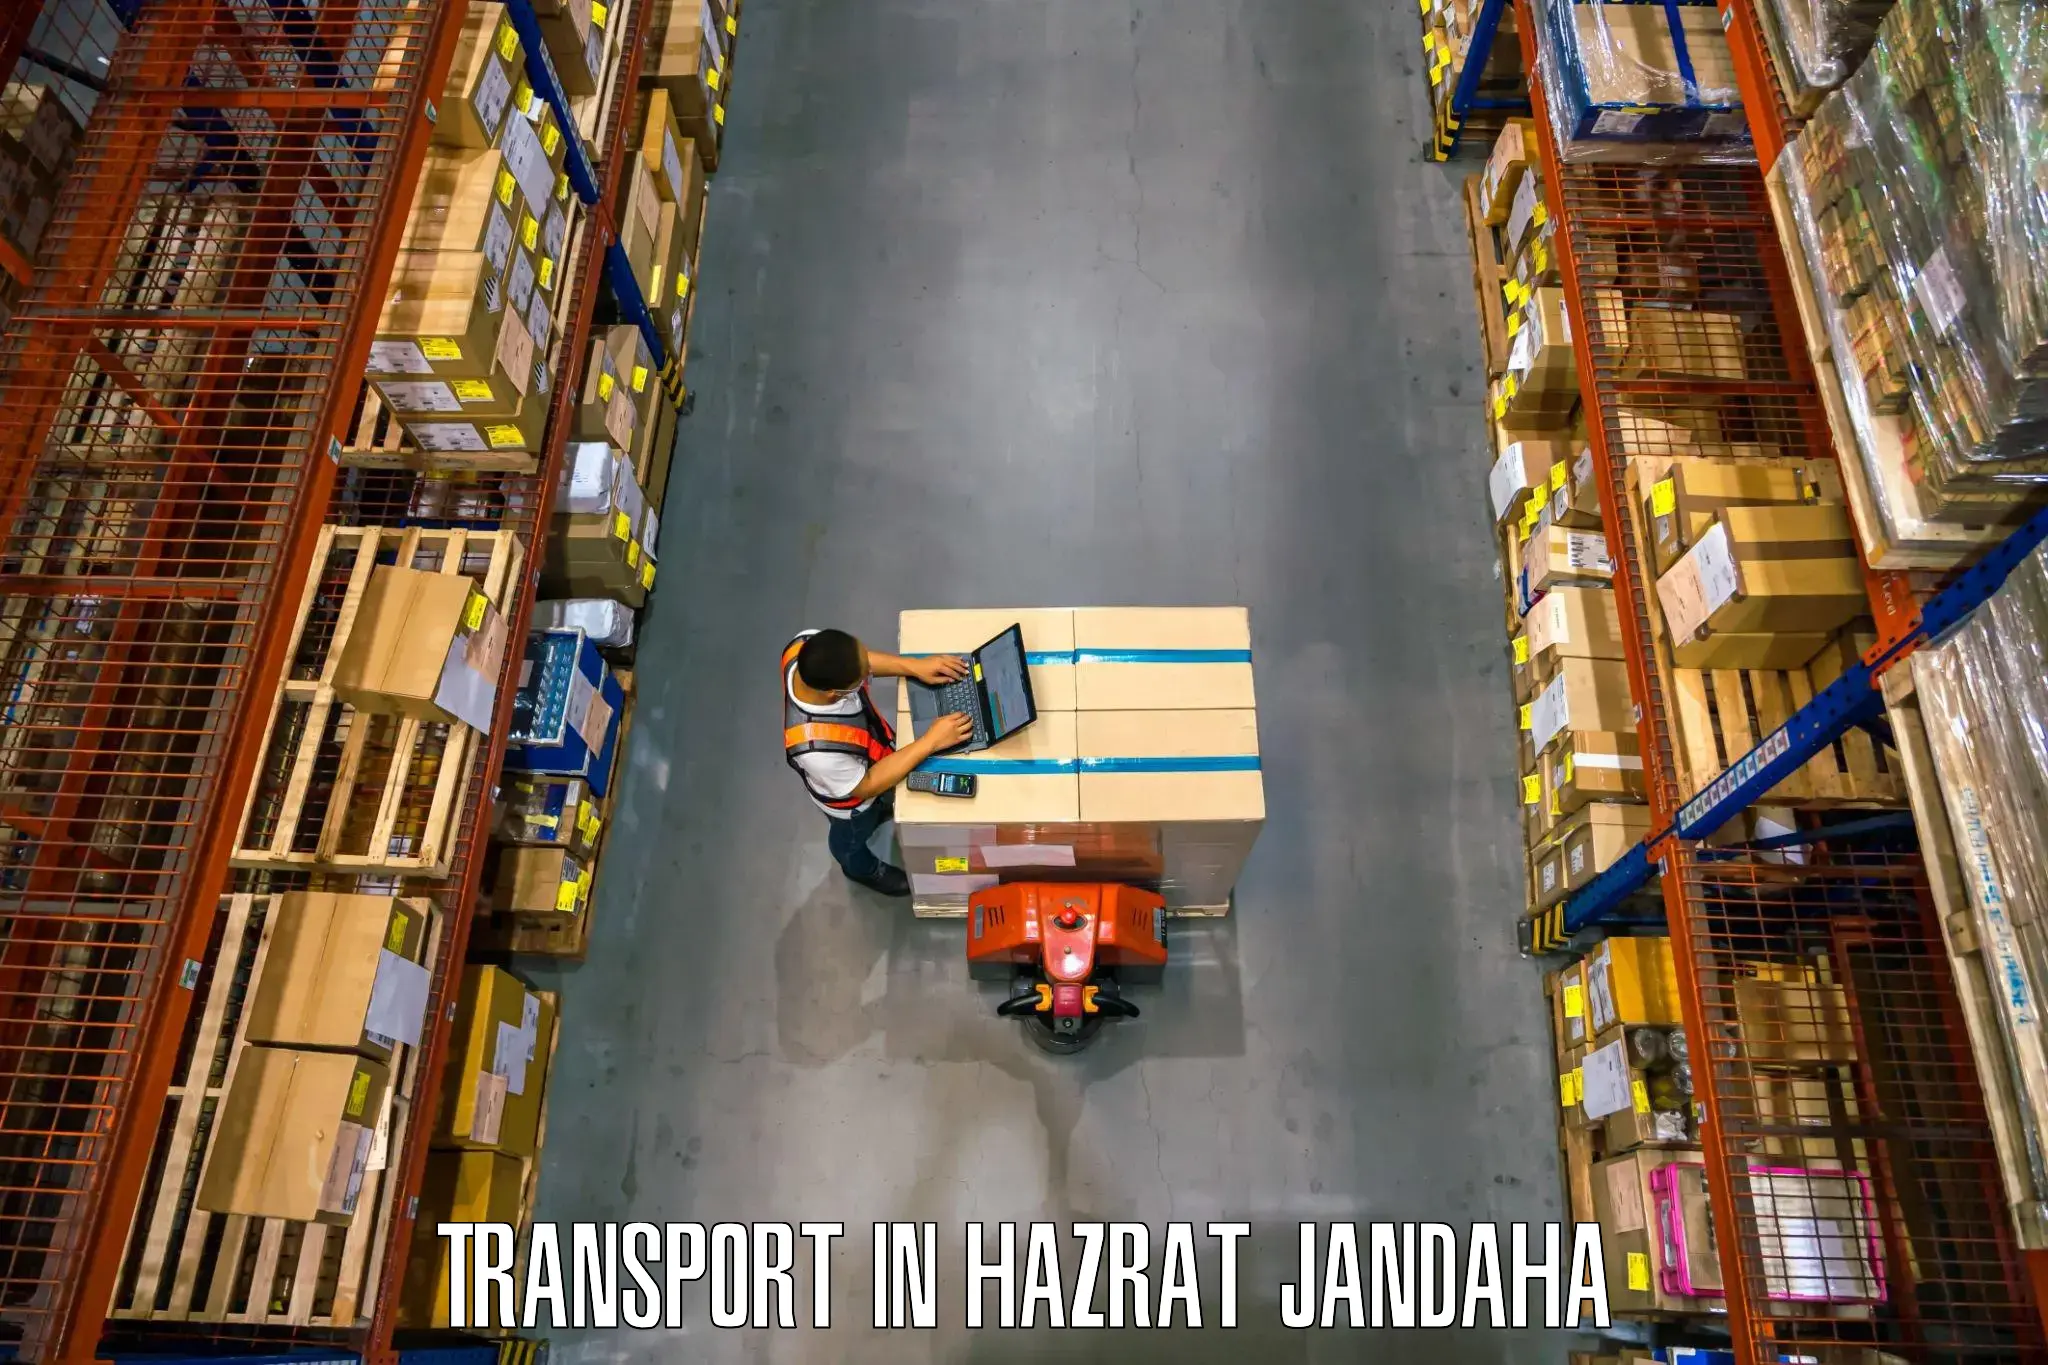 Nearby transport service in Hazrat Jandaha